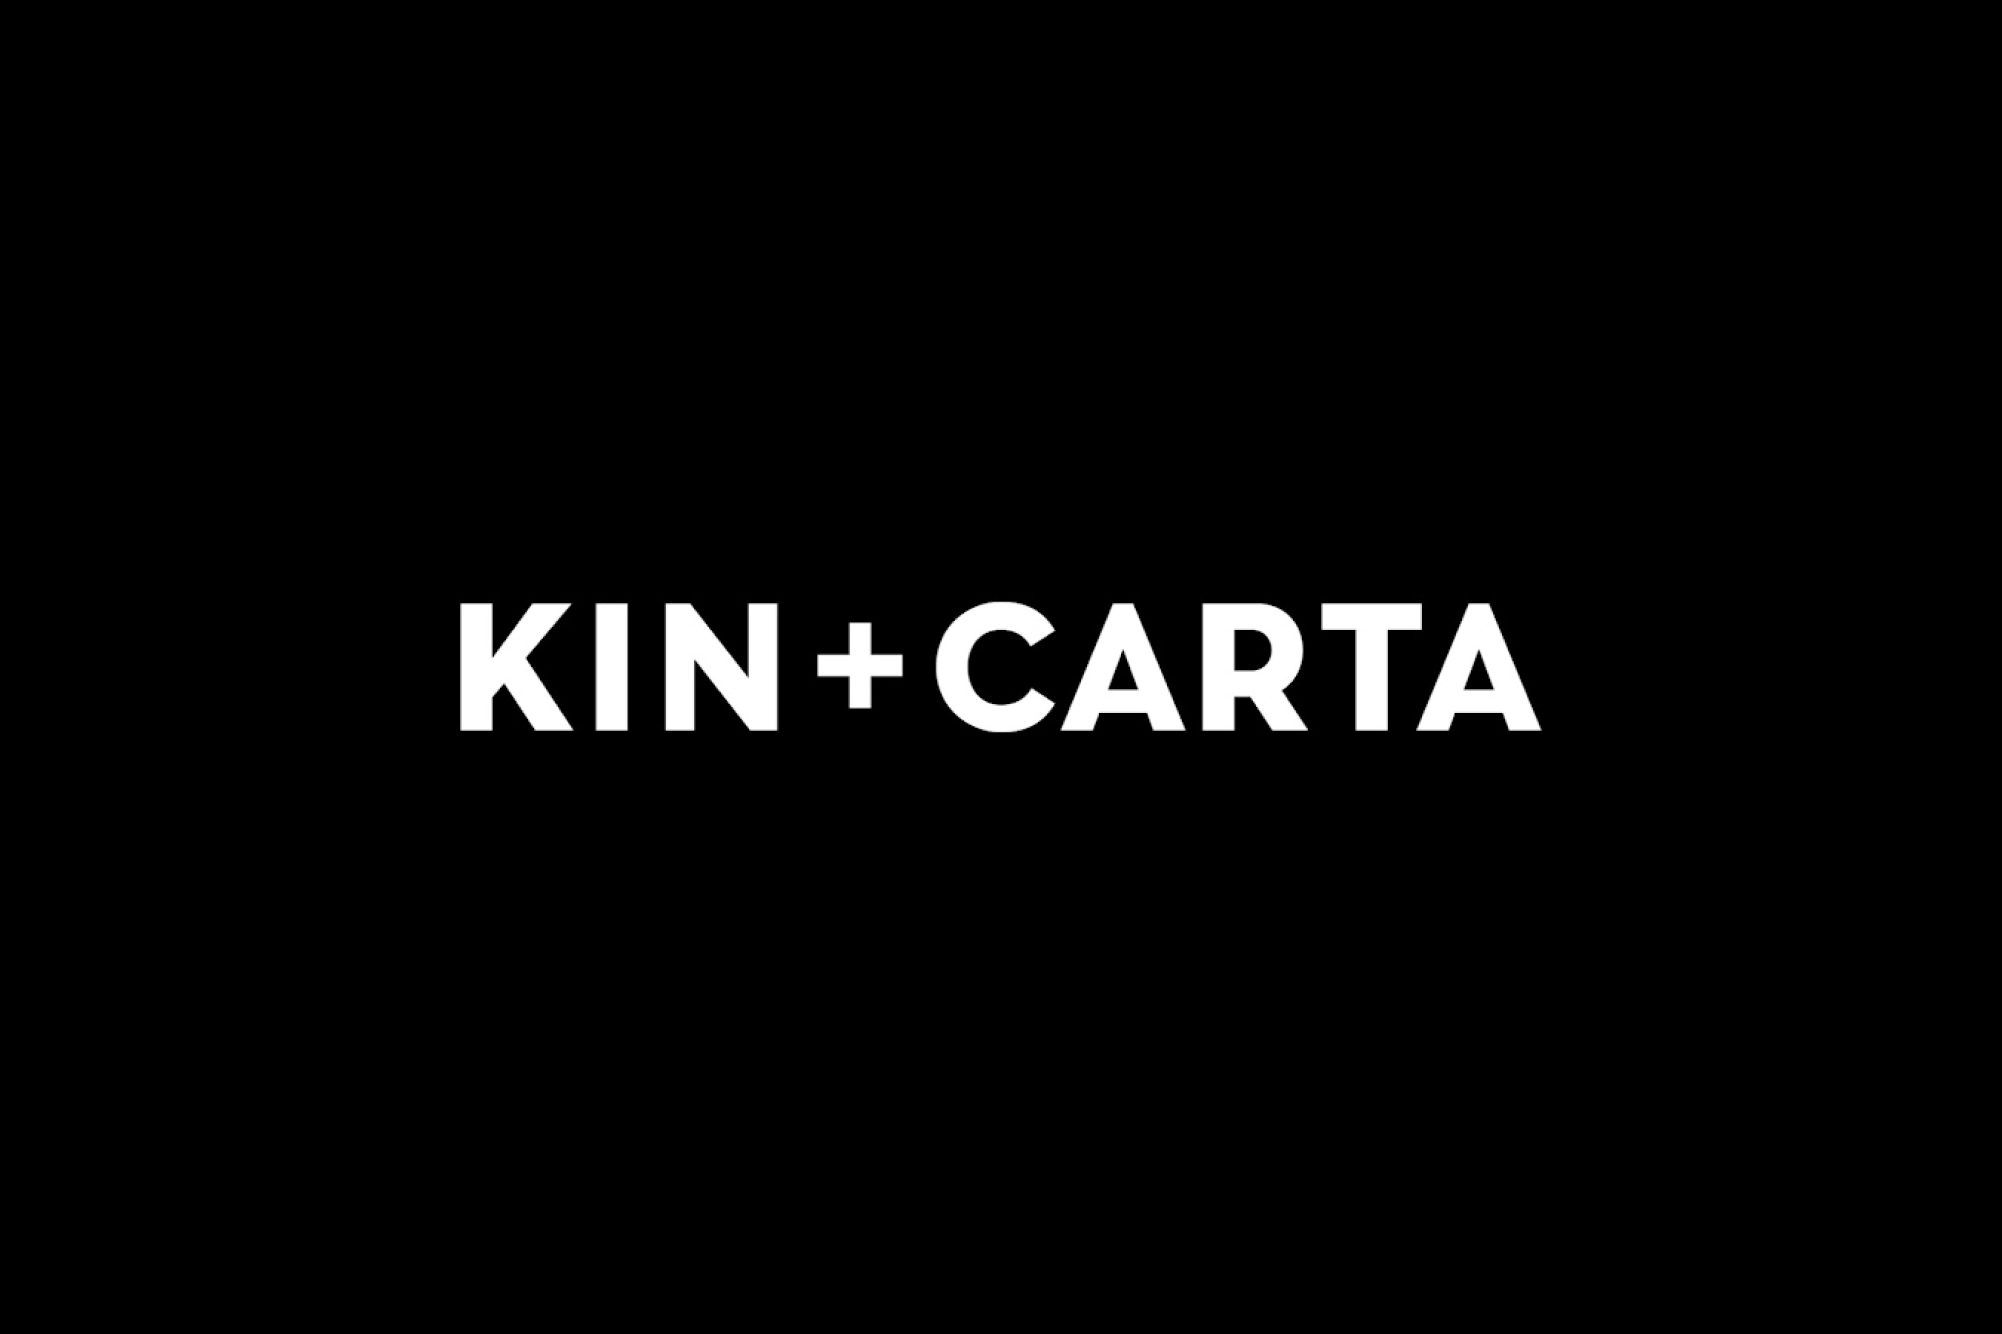 Kin + Carta announces intent to acquire Frakton and Melon